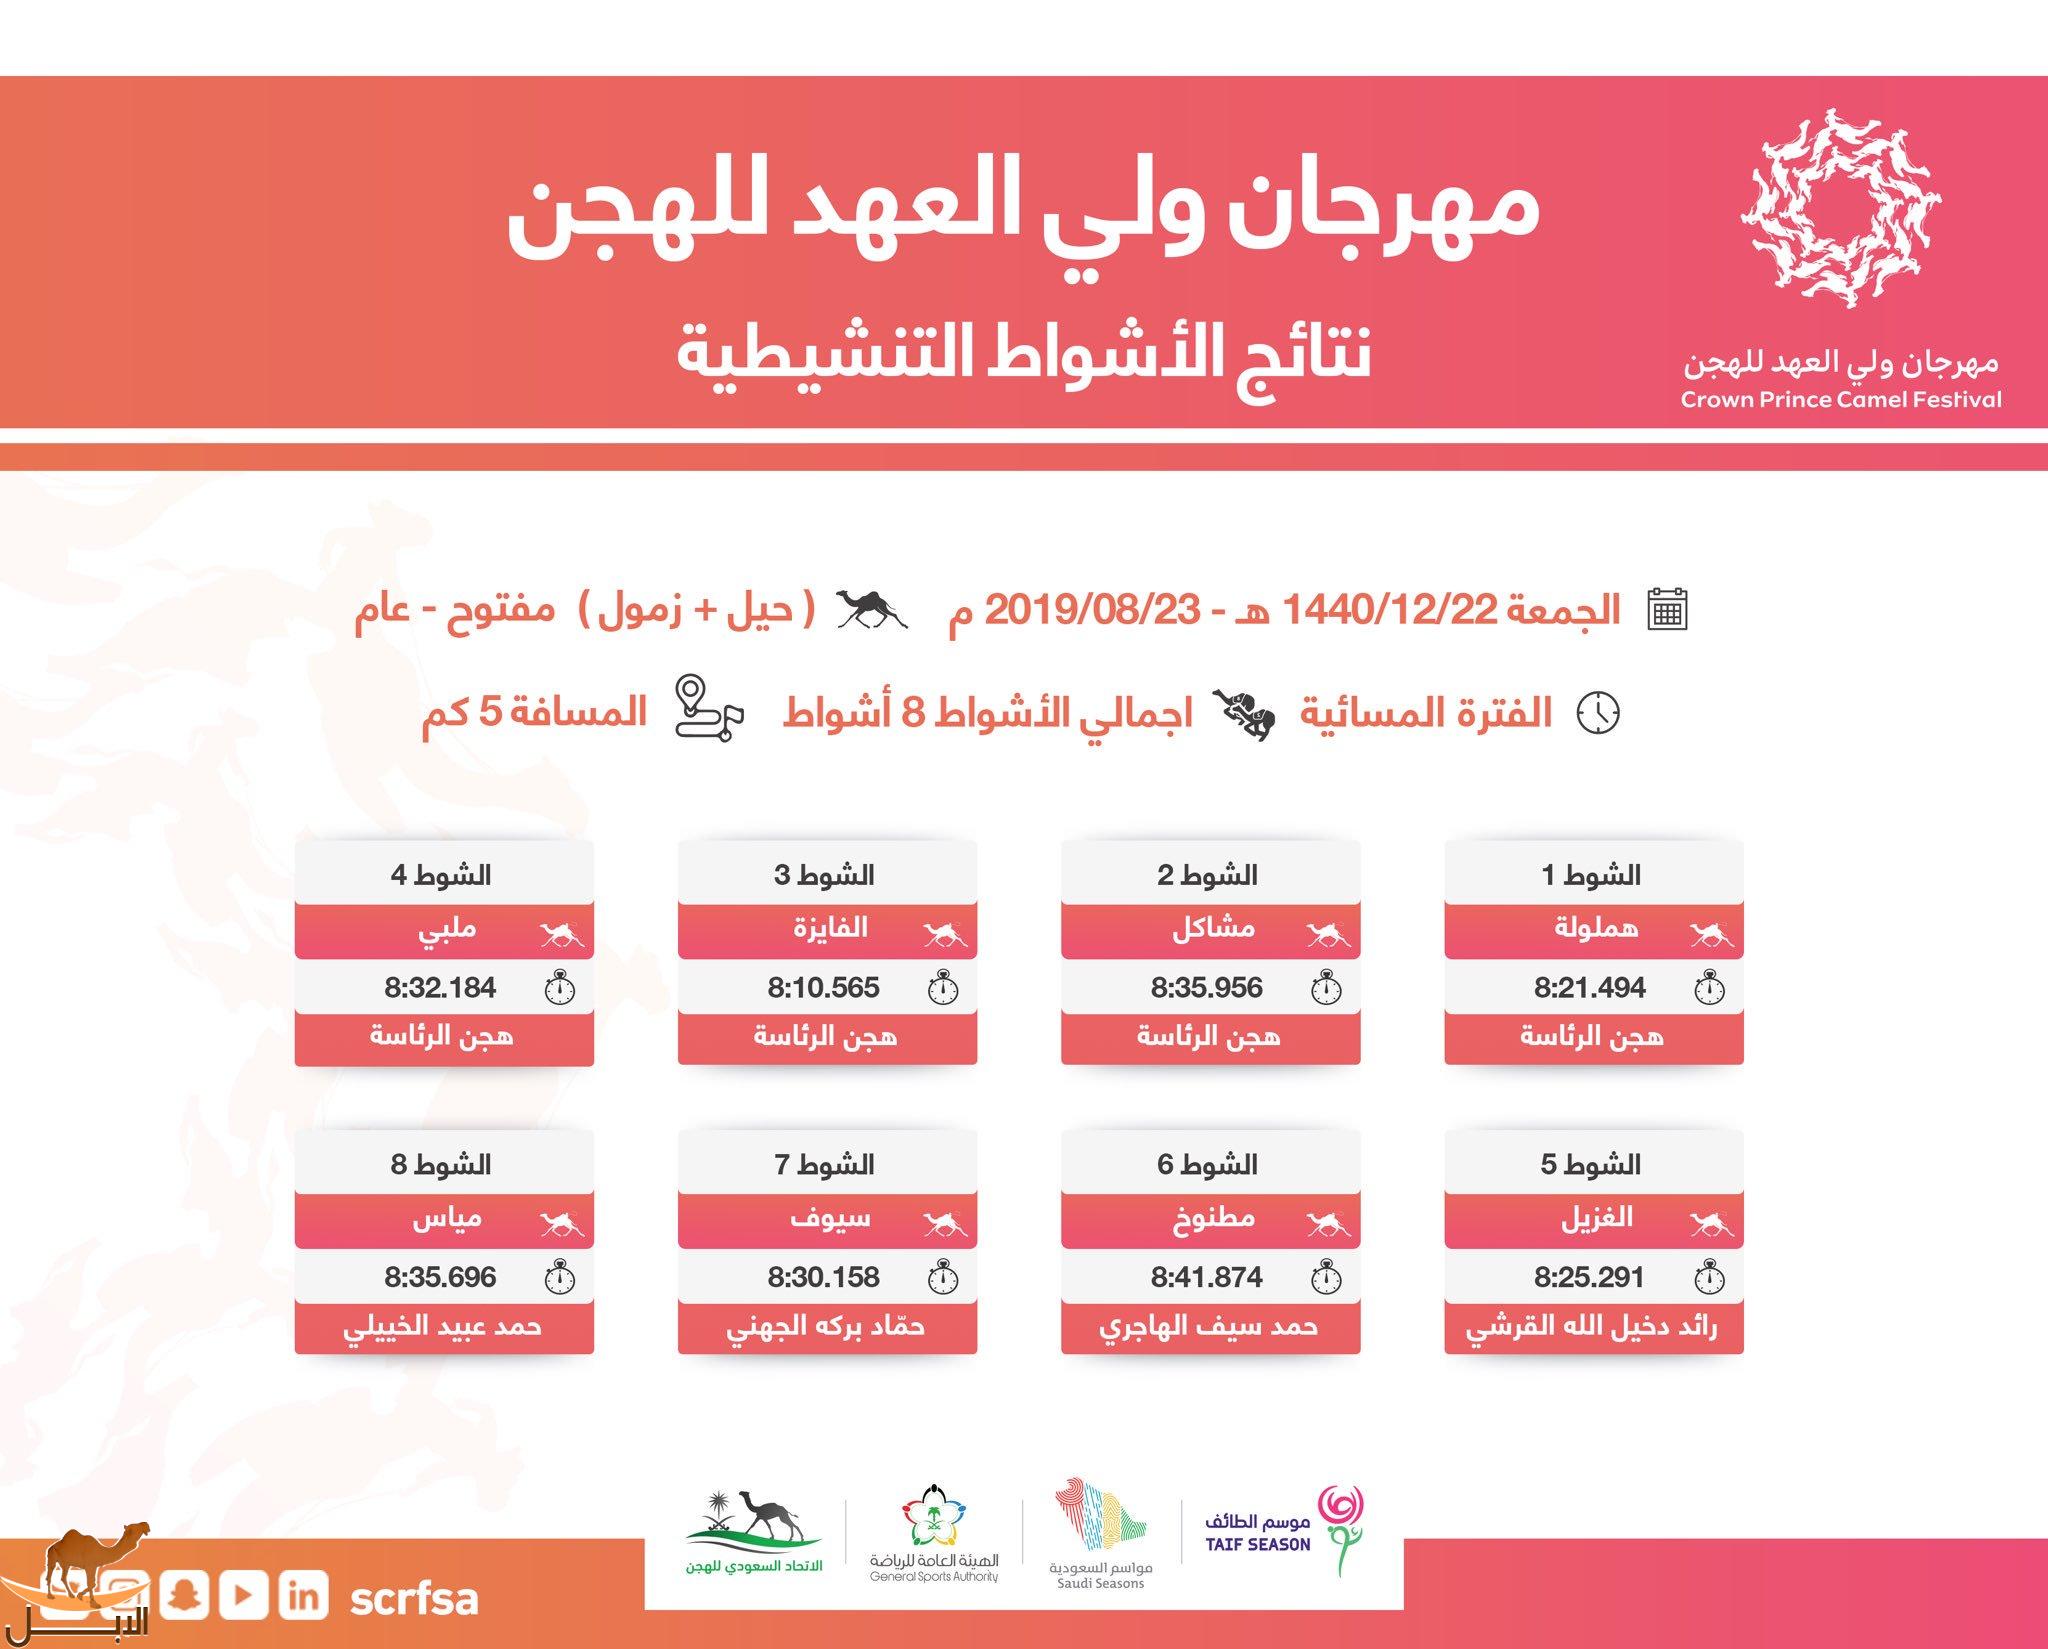 أسماء الفائزين في سباقات الفترة المسائية ليوم الجمعة 22 ذو الحجة 1440هـ - 23 أغسطس 2019